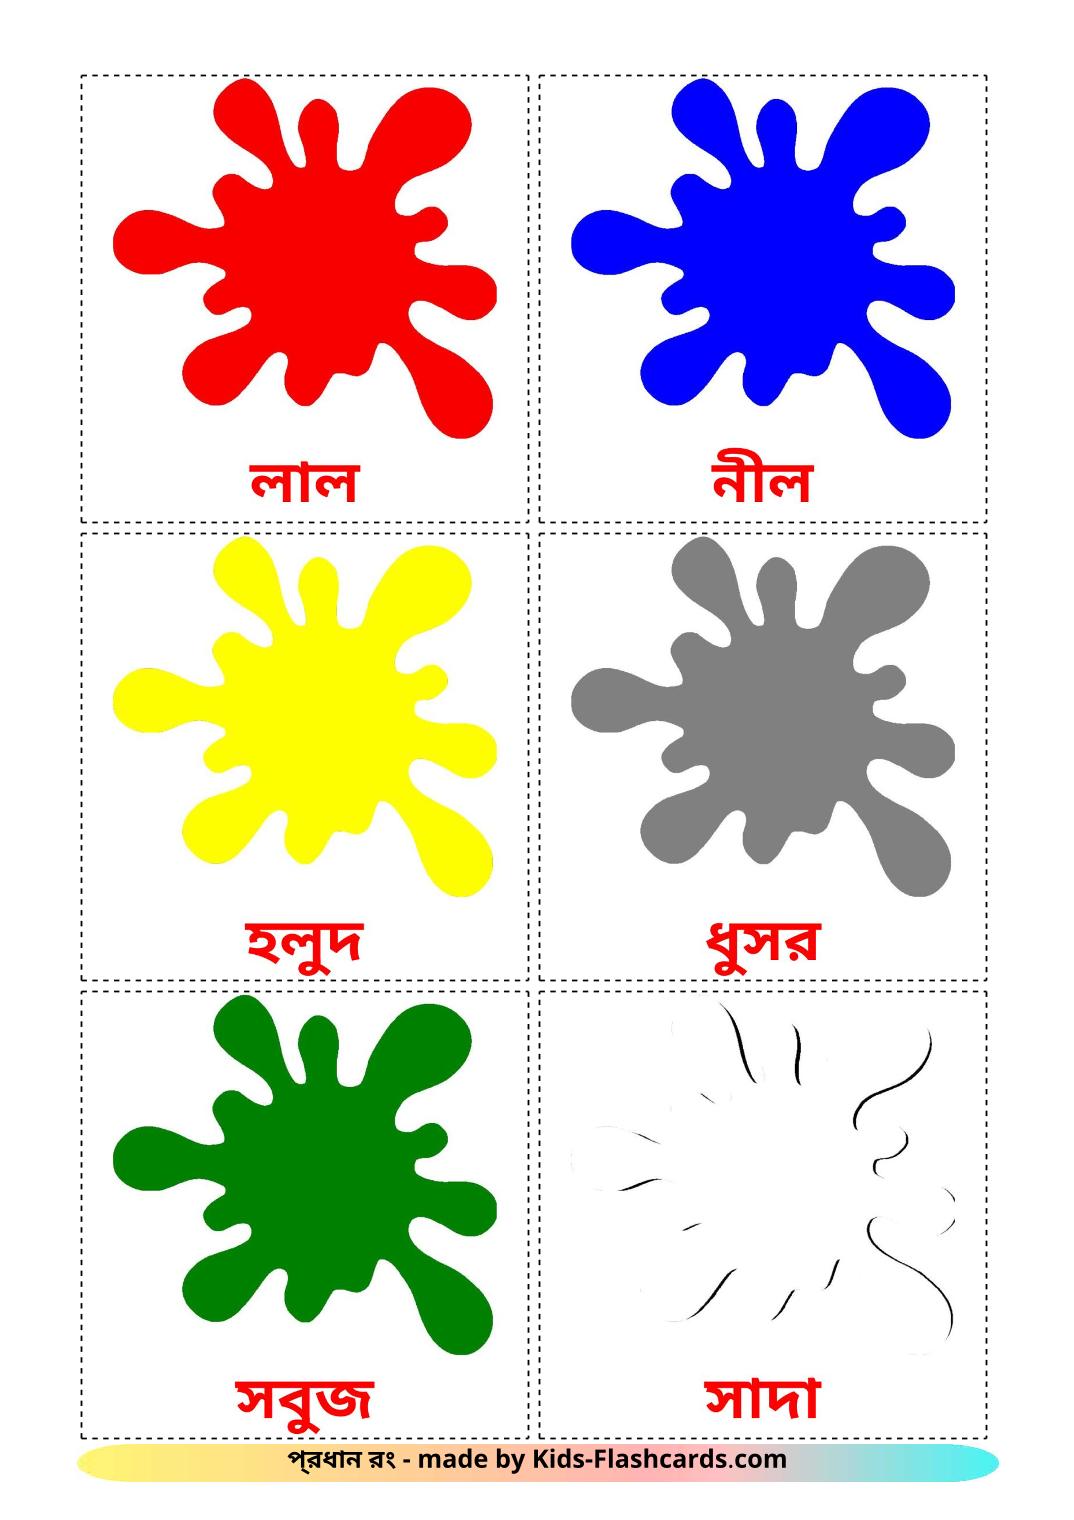 Cores básicas - 12 Flashcards bengalies gratuitos para impressão